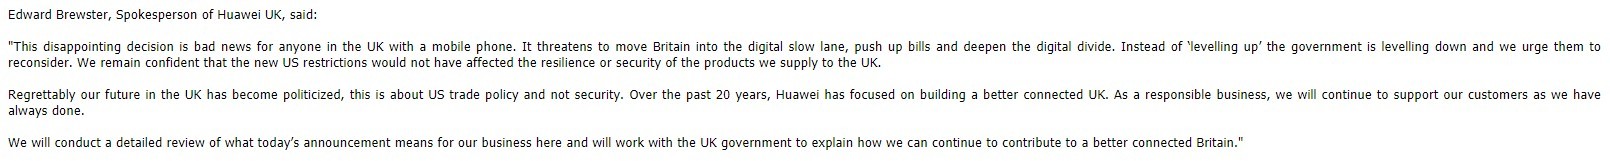 영국 화웨이 대변인 에드워드 브루스터의 영국 5G 네트워크 내 화웨이 장비 금지 결정 관련 공식 입장문